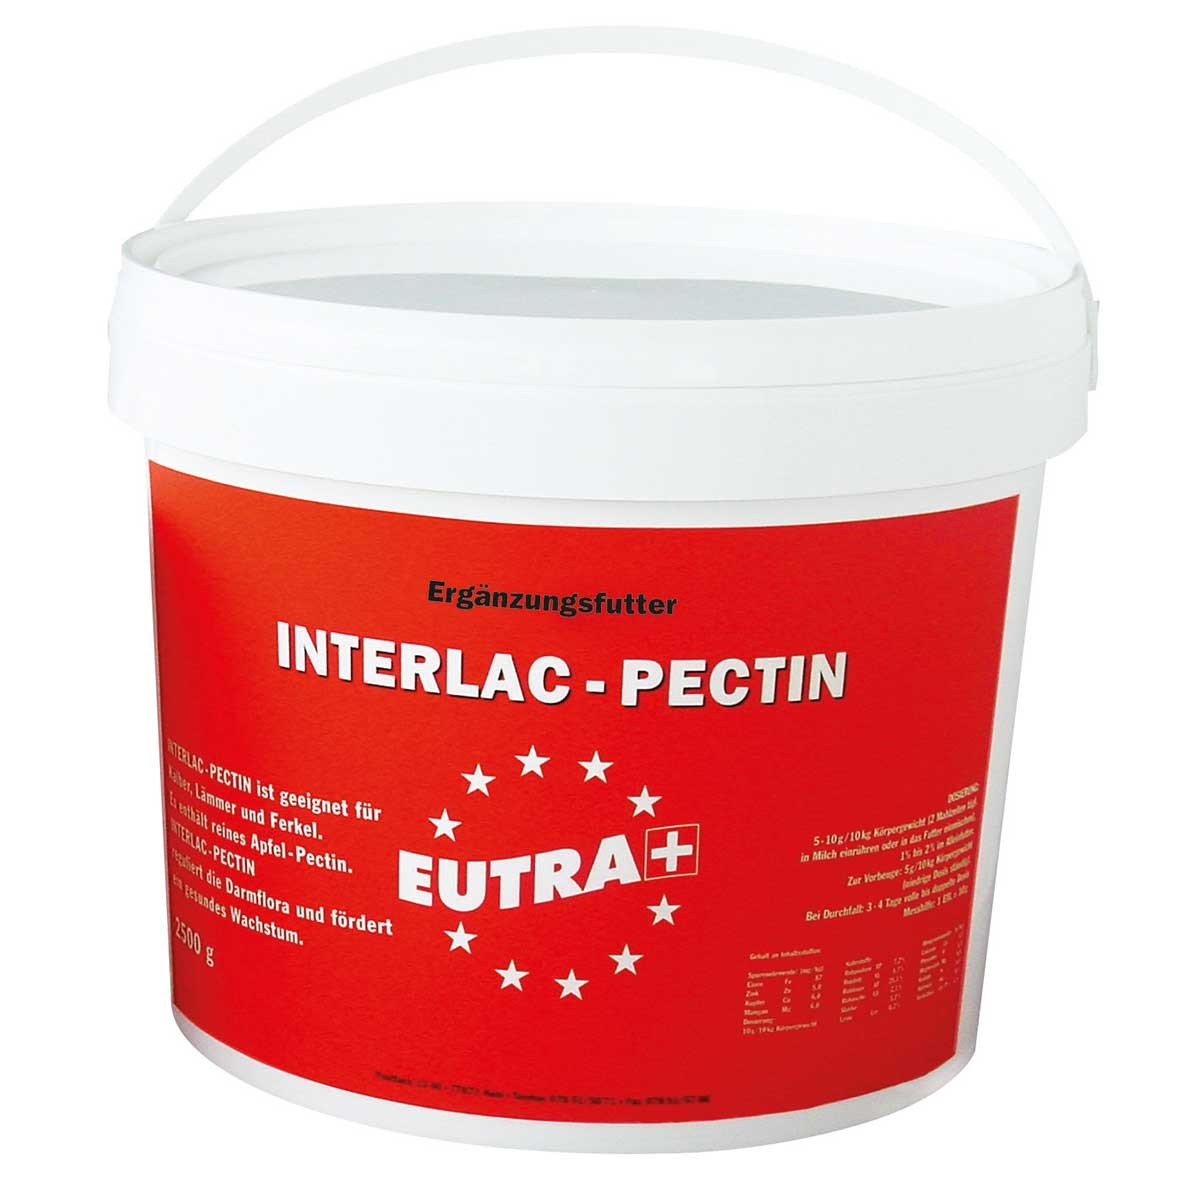 EUTRA Diarrhea Stopper INTERLAC-PECTIN